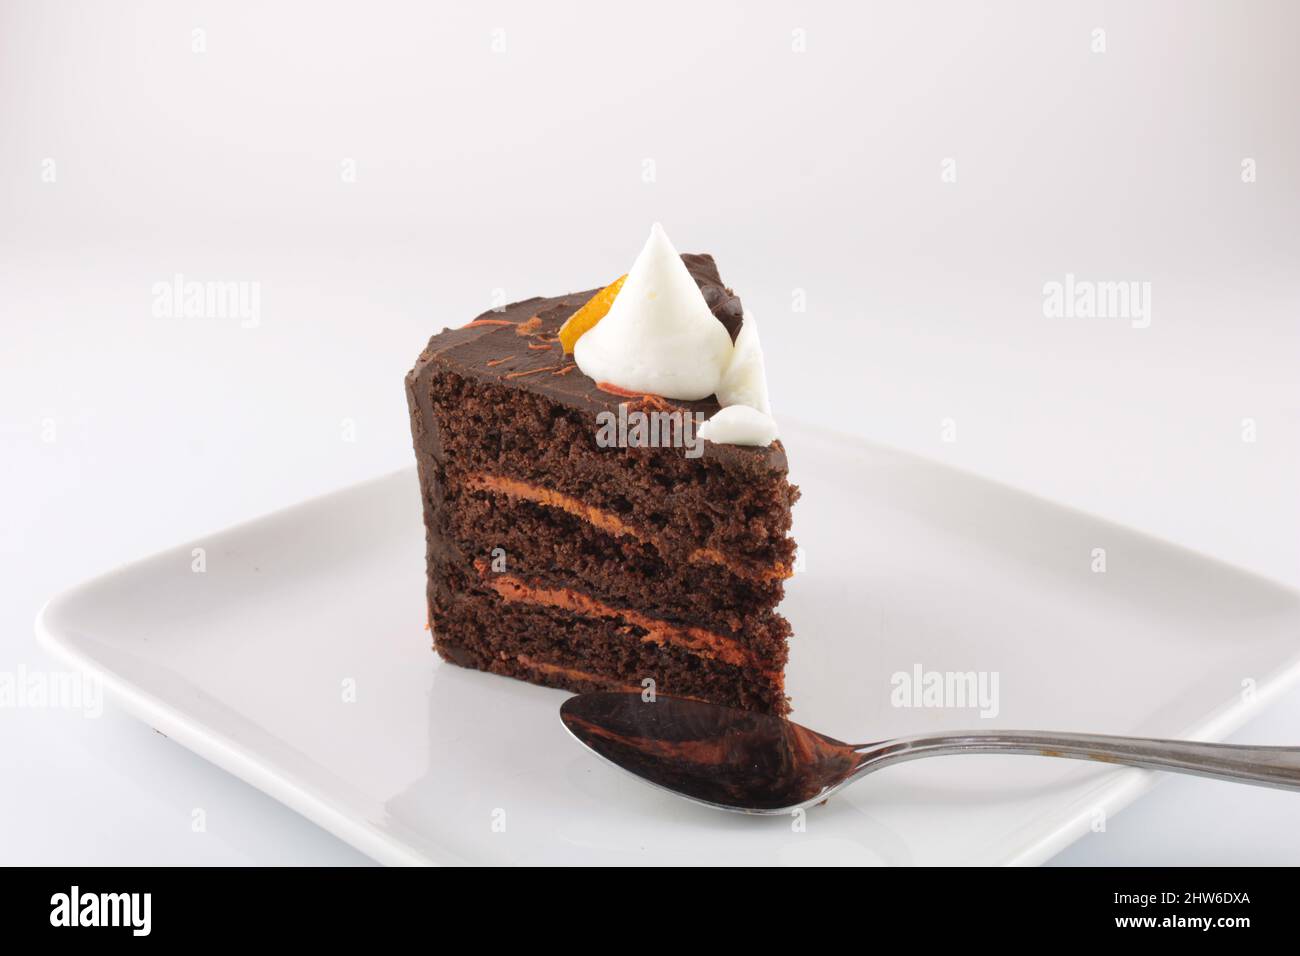 Fetta di torta al cioccolato al cioccolato e all'arancia, ricca di sfumature scure, isolata su un piatto con spazio per la copia. Concetto di obesità Foto Stock